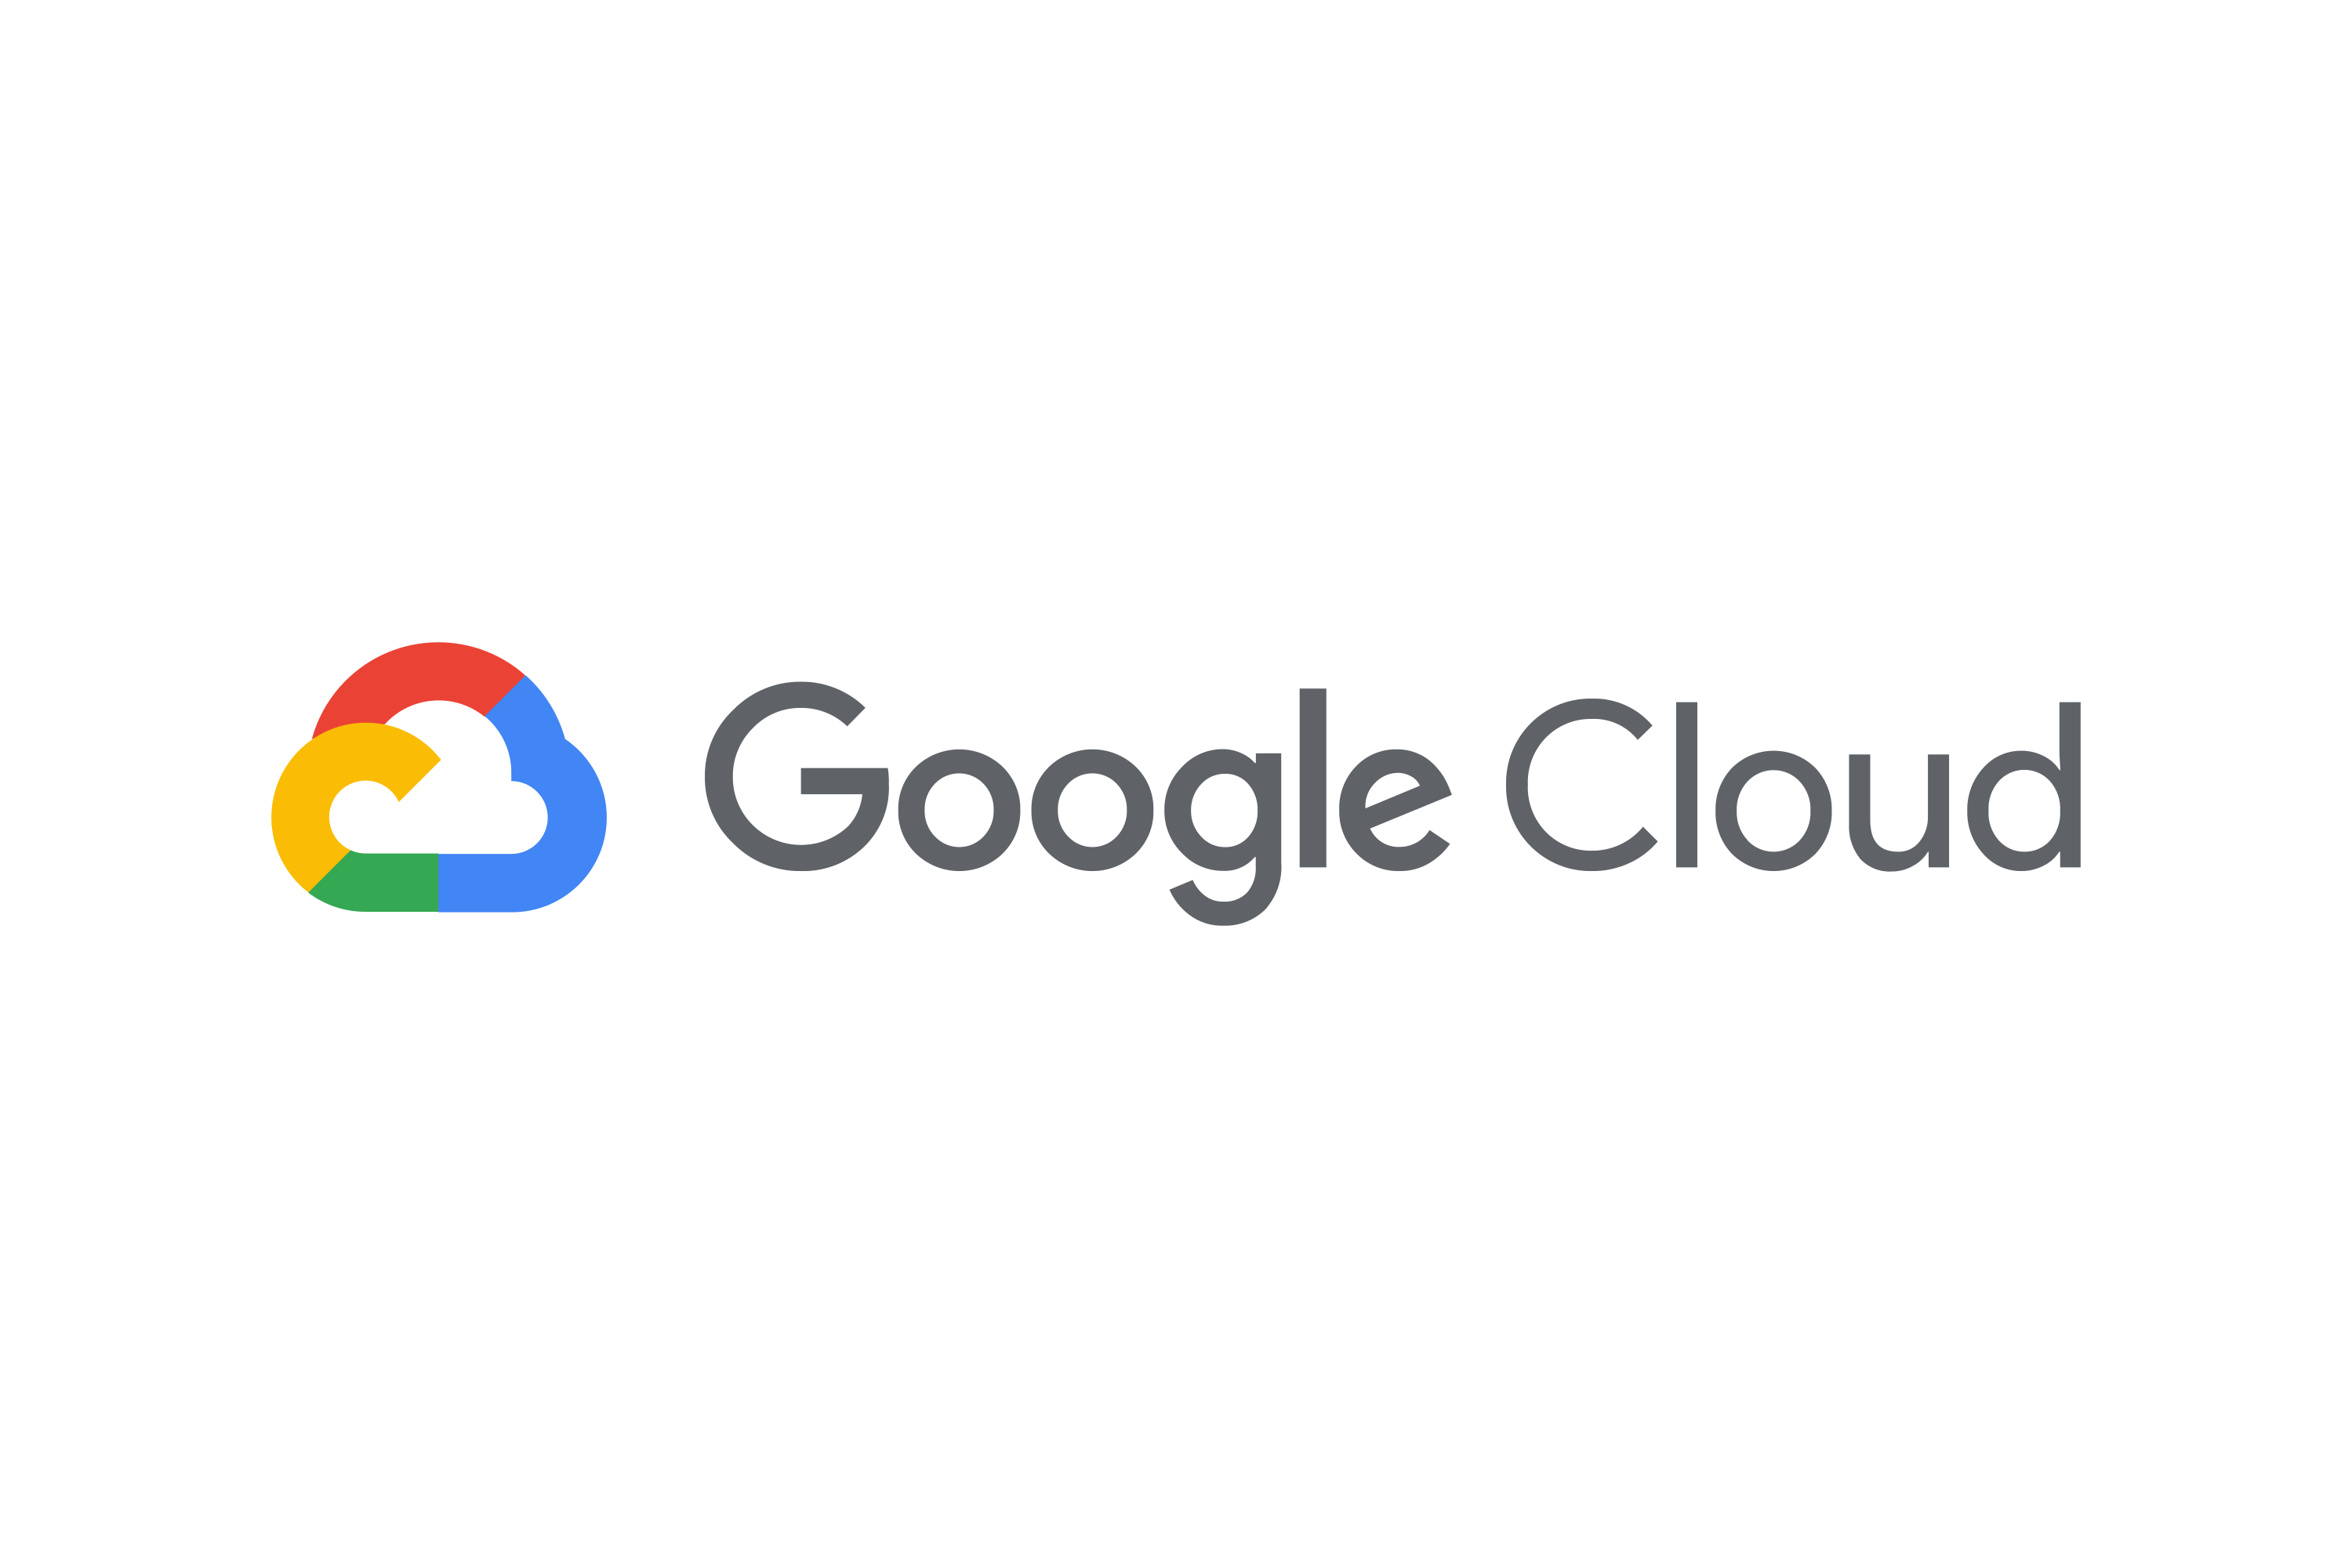 Download Google Cloud Platform Gcp Logo In Svg Vector Or Png File Format Logo Wine